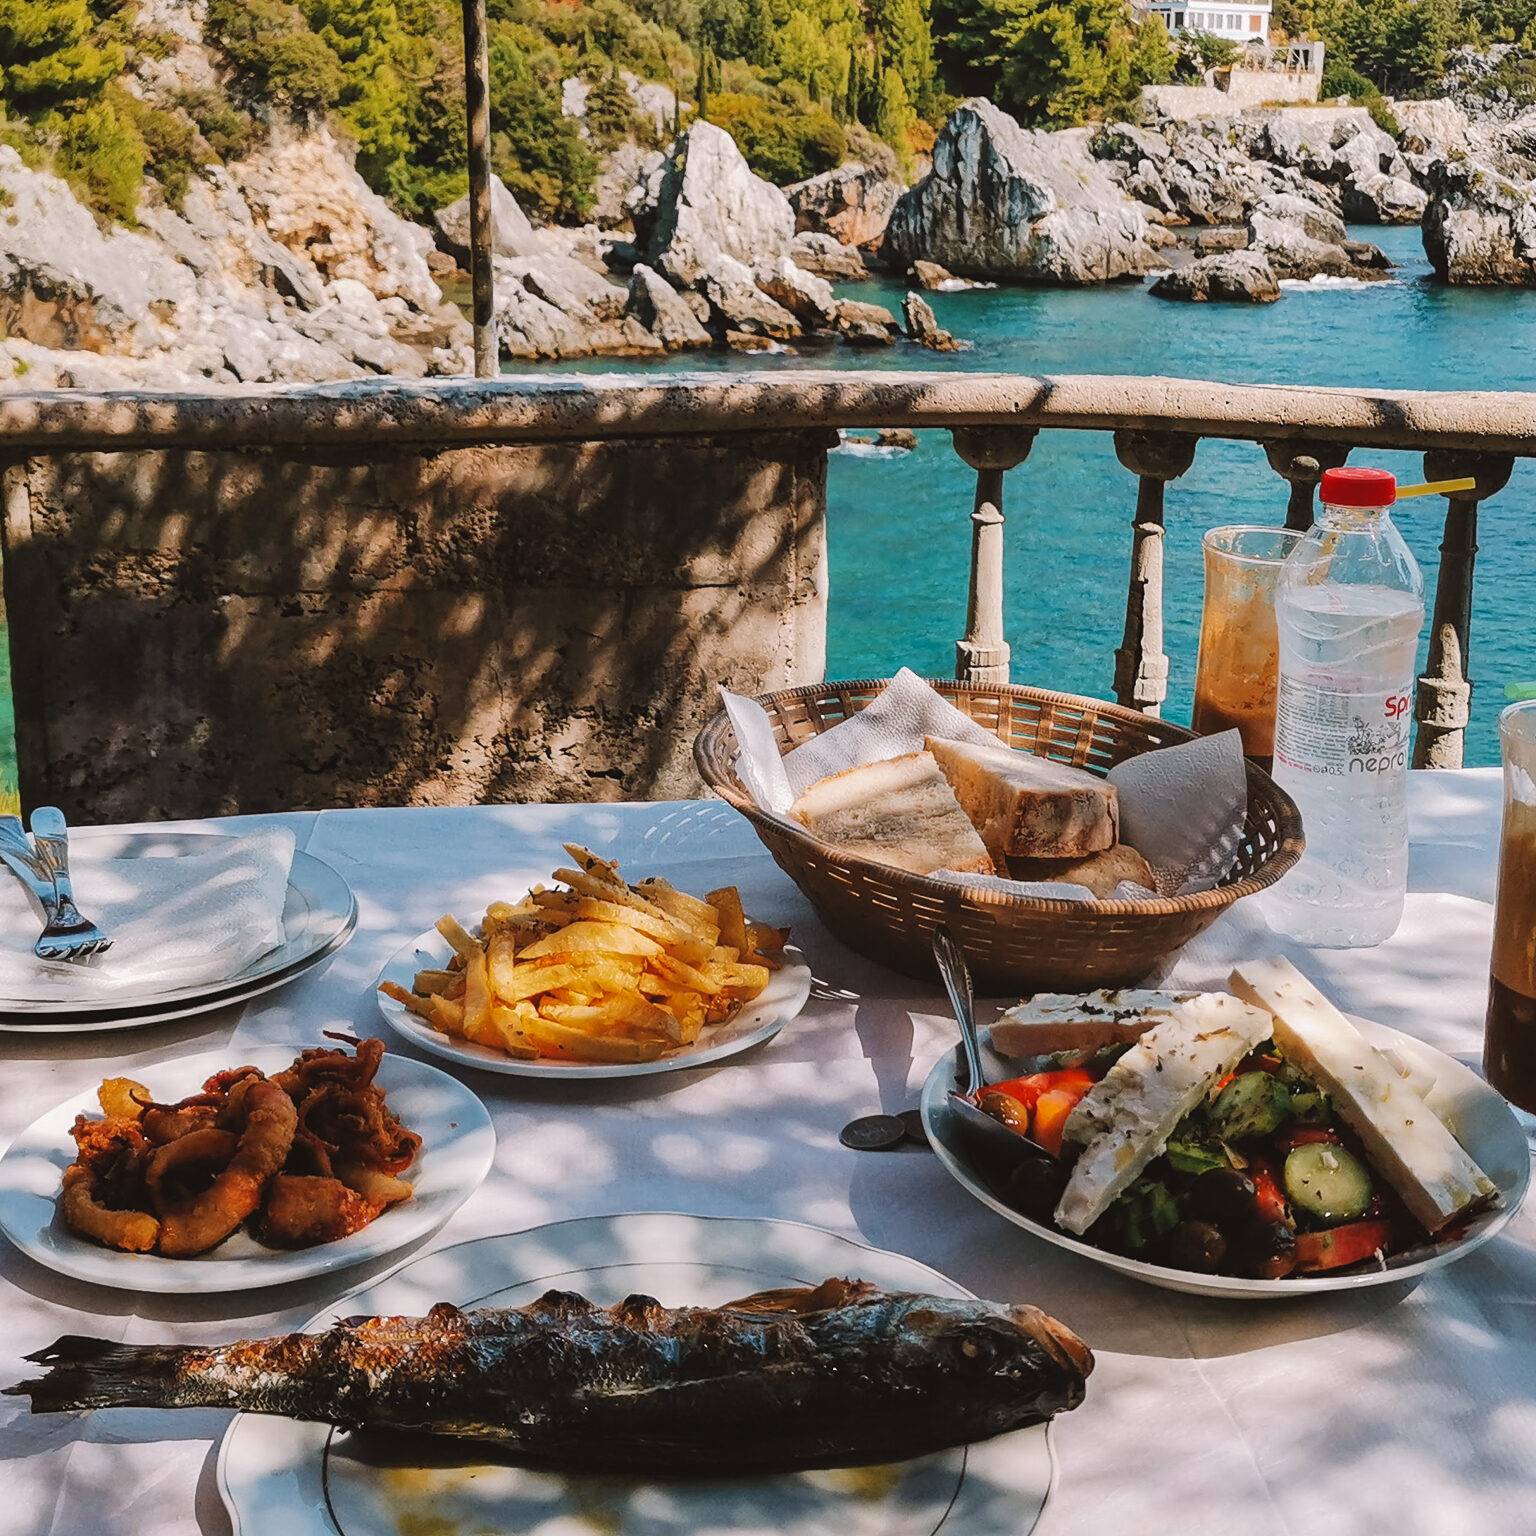 Reichhaltiges Mittagessen direkt an der albanischen Riviera.